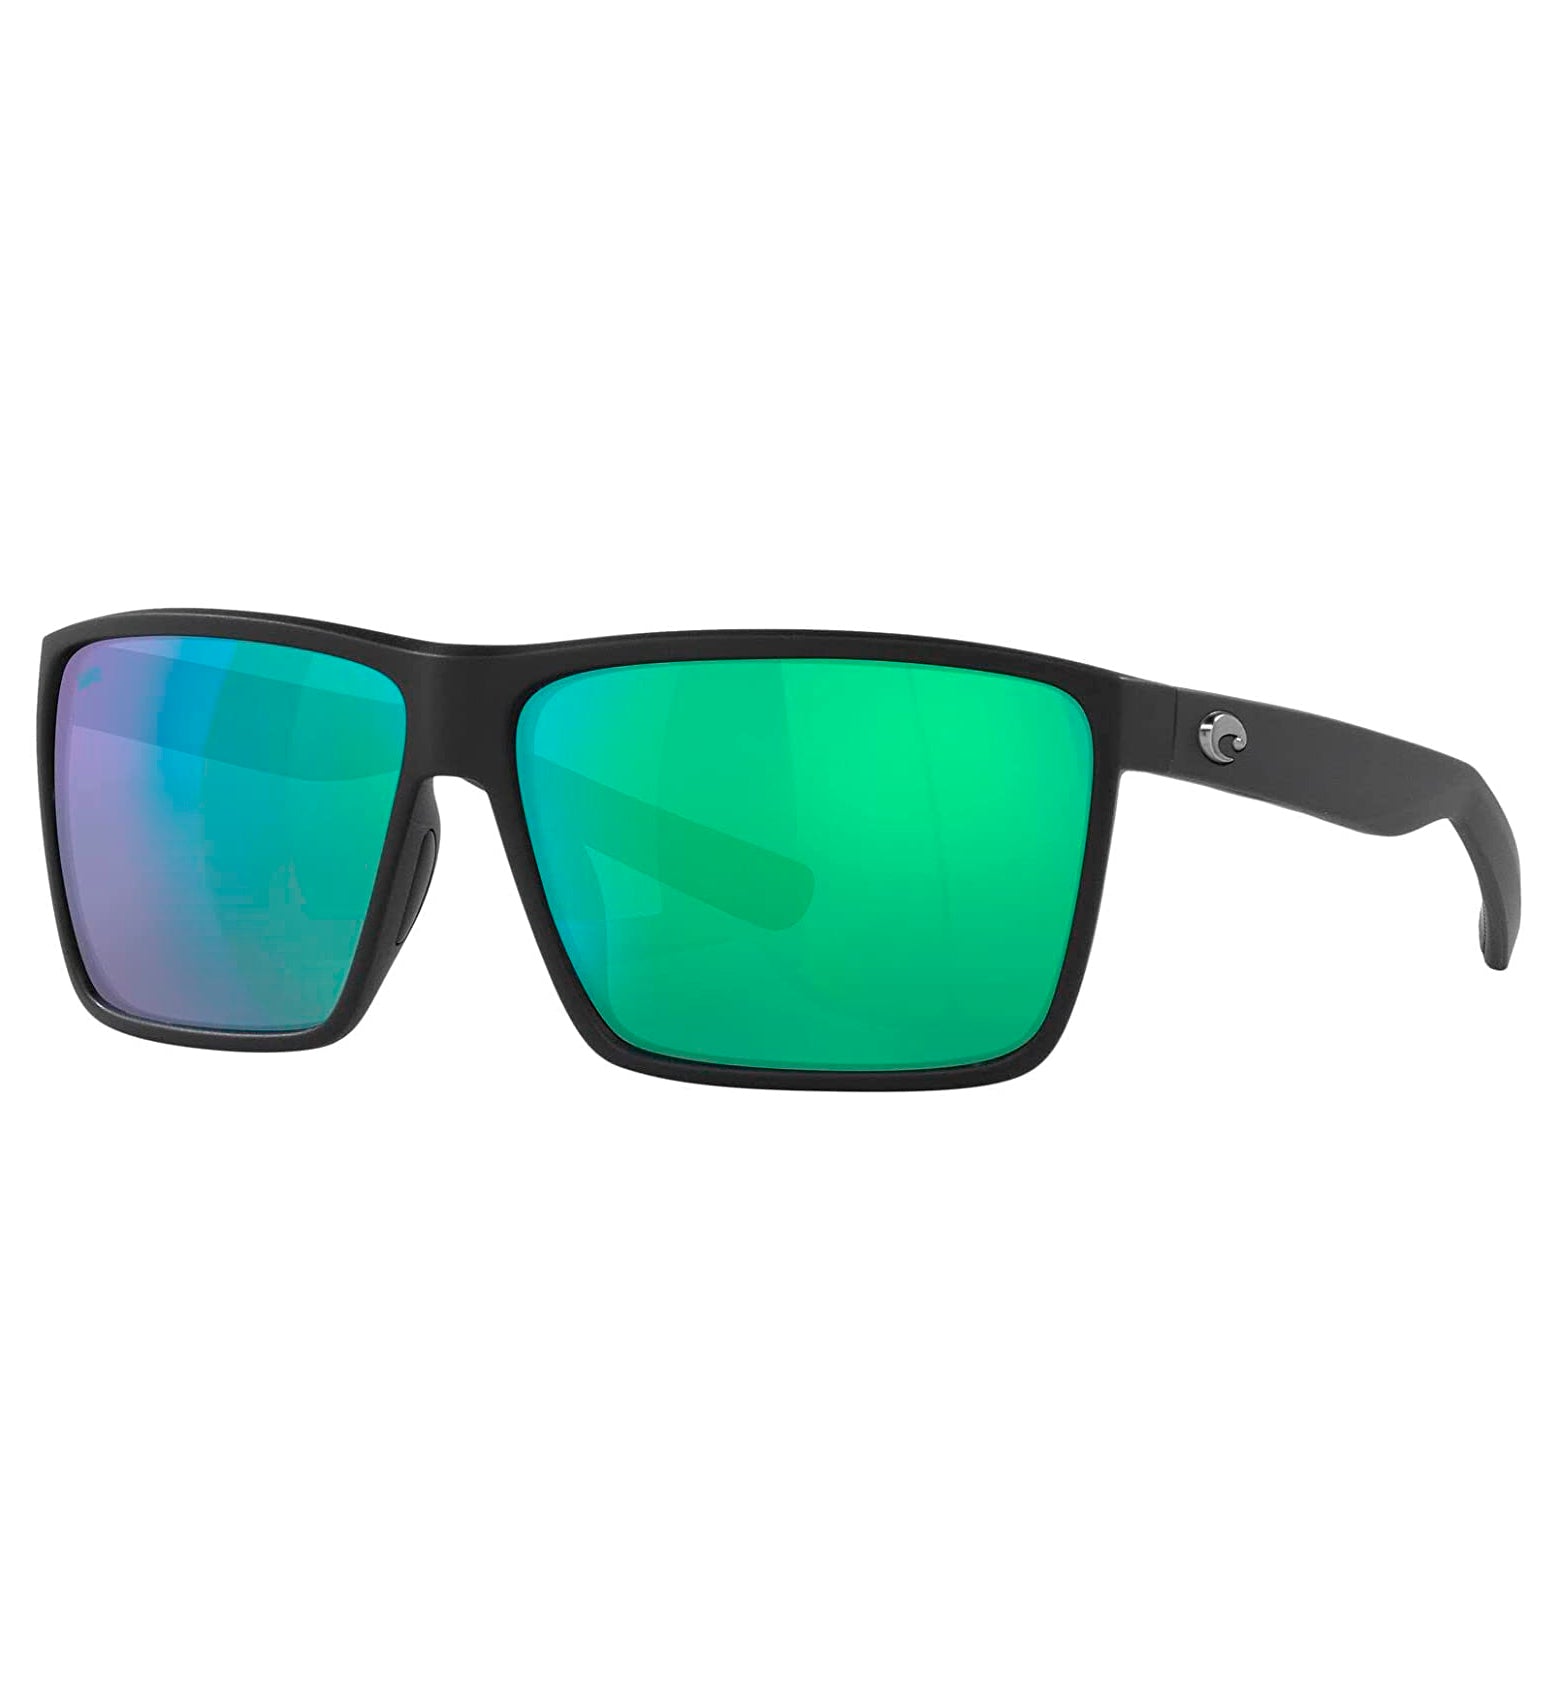 Costa Del Mar Rincon Sunglasses Black GreenMirror 580G